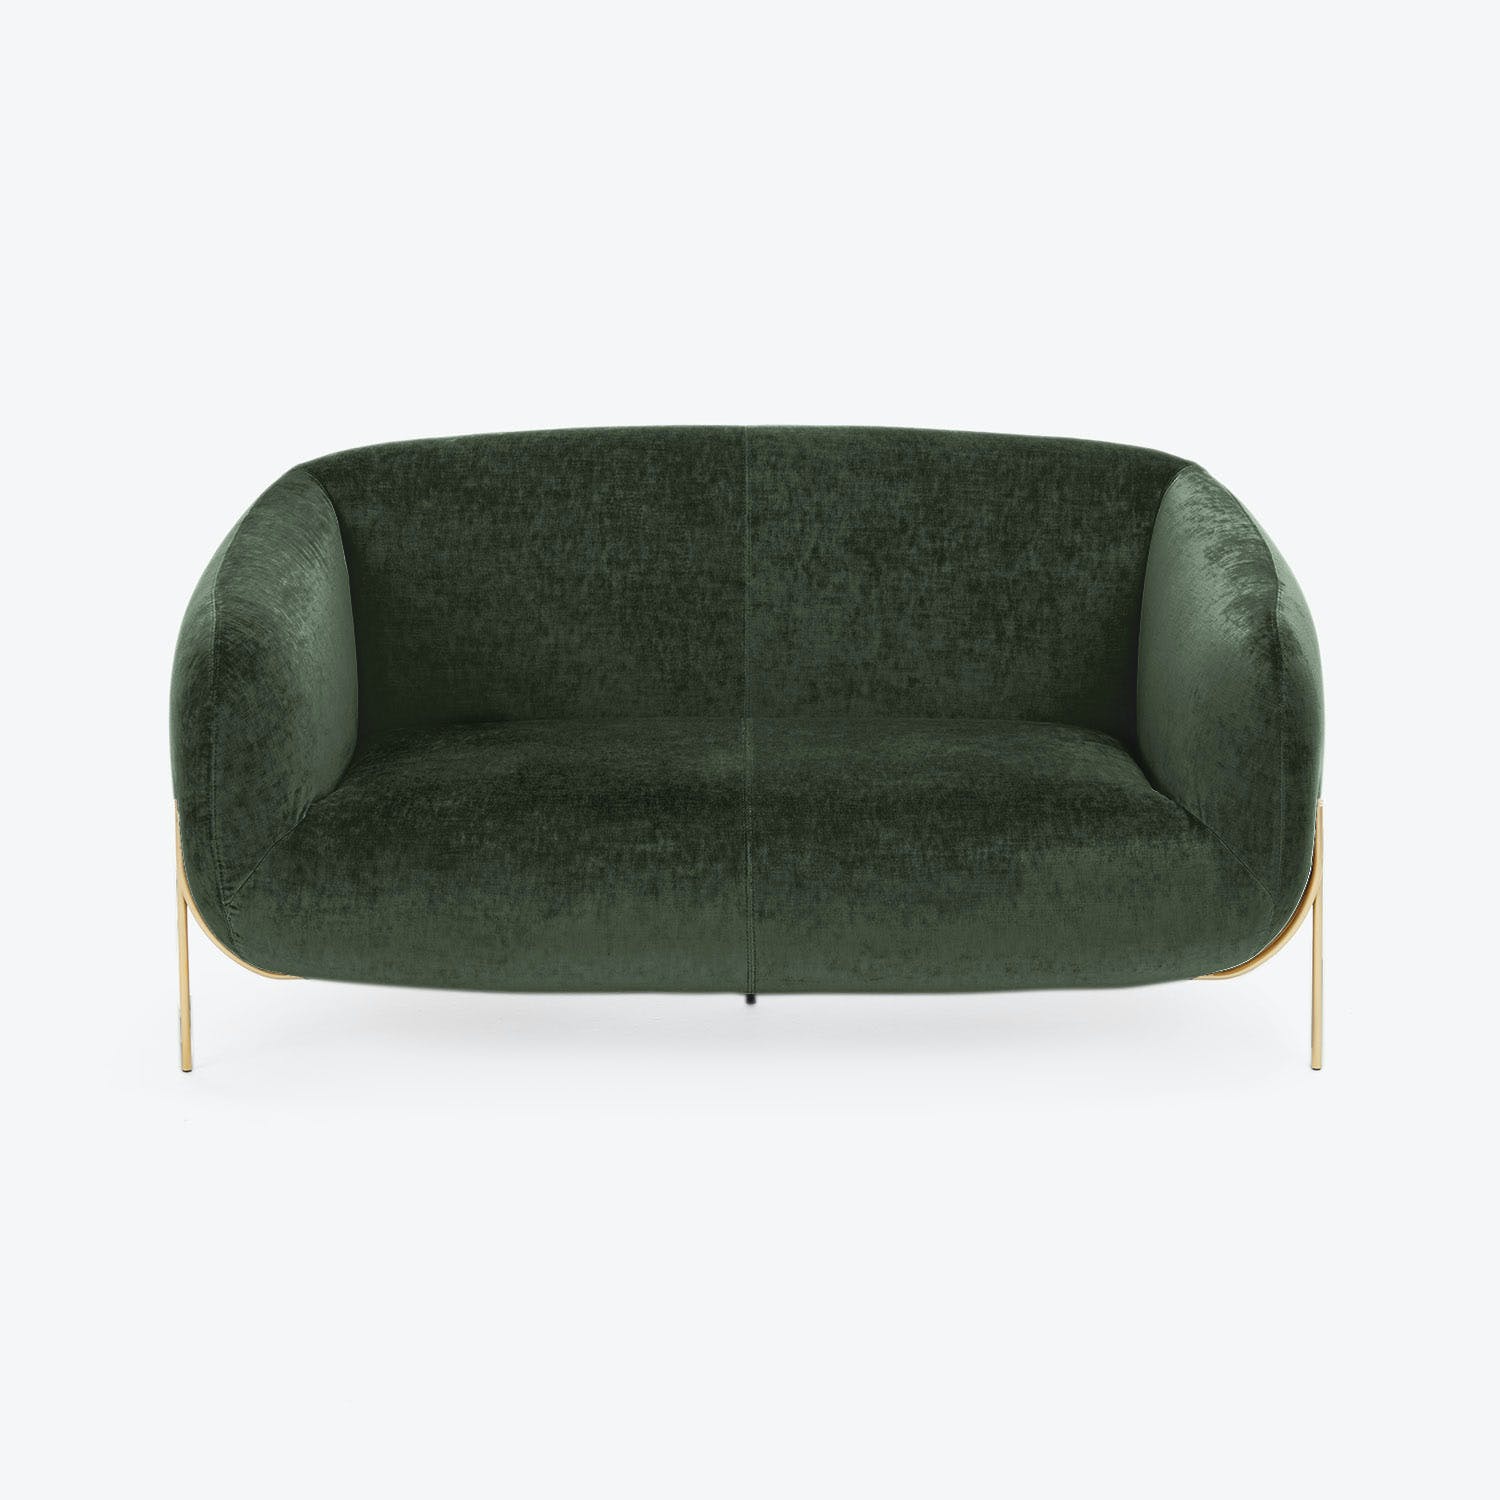 Modern sofa with curved backrest and dark green velvet upholstery.